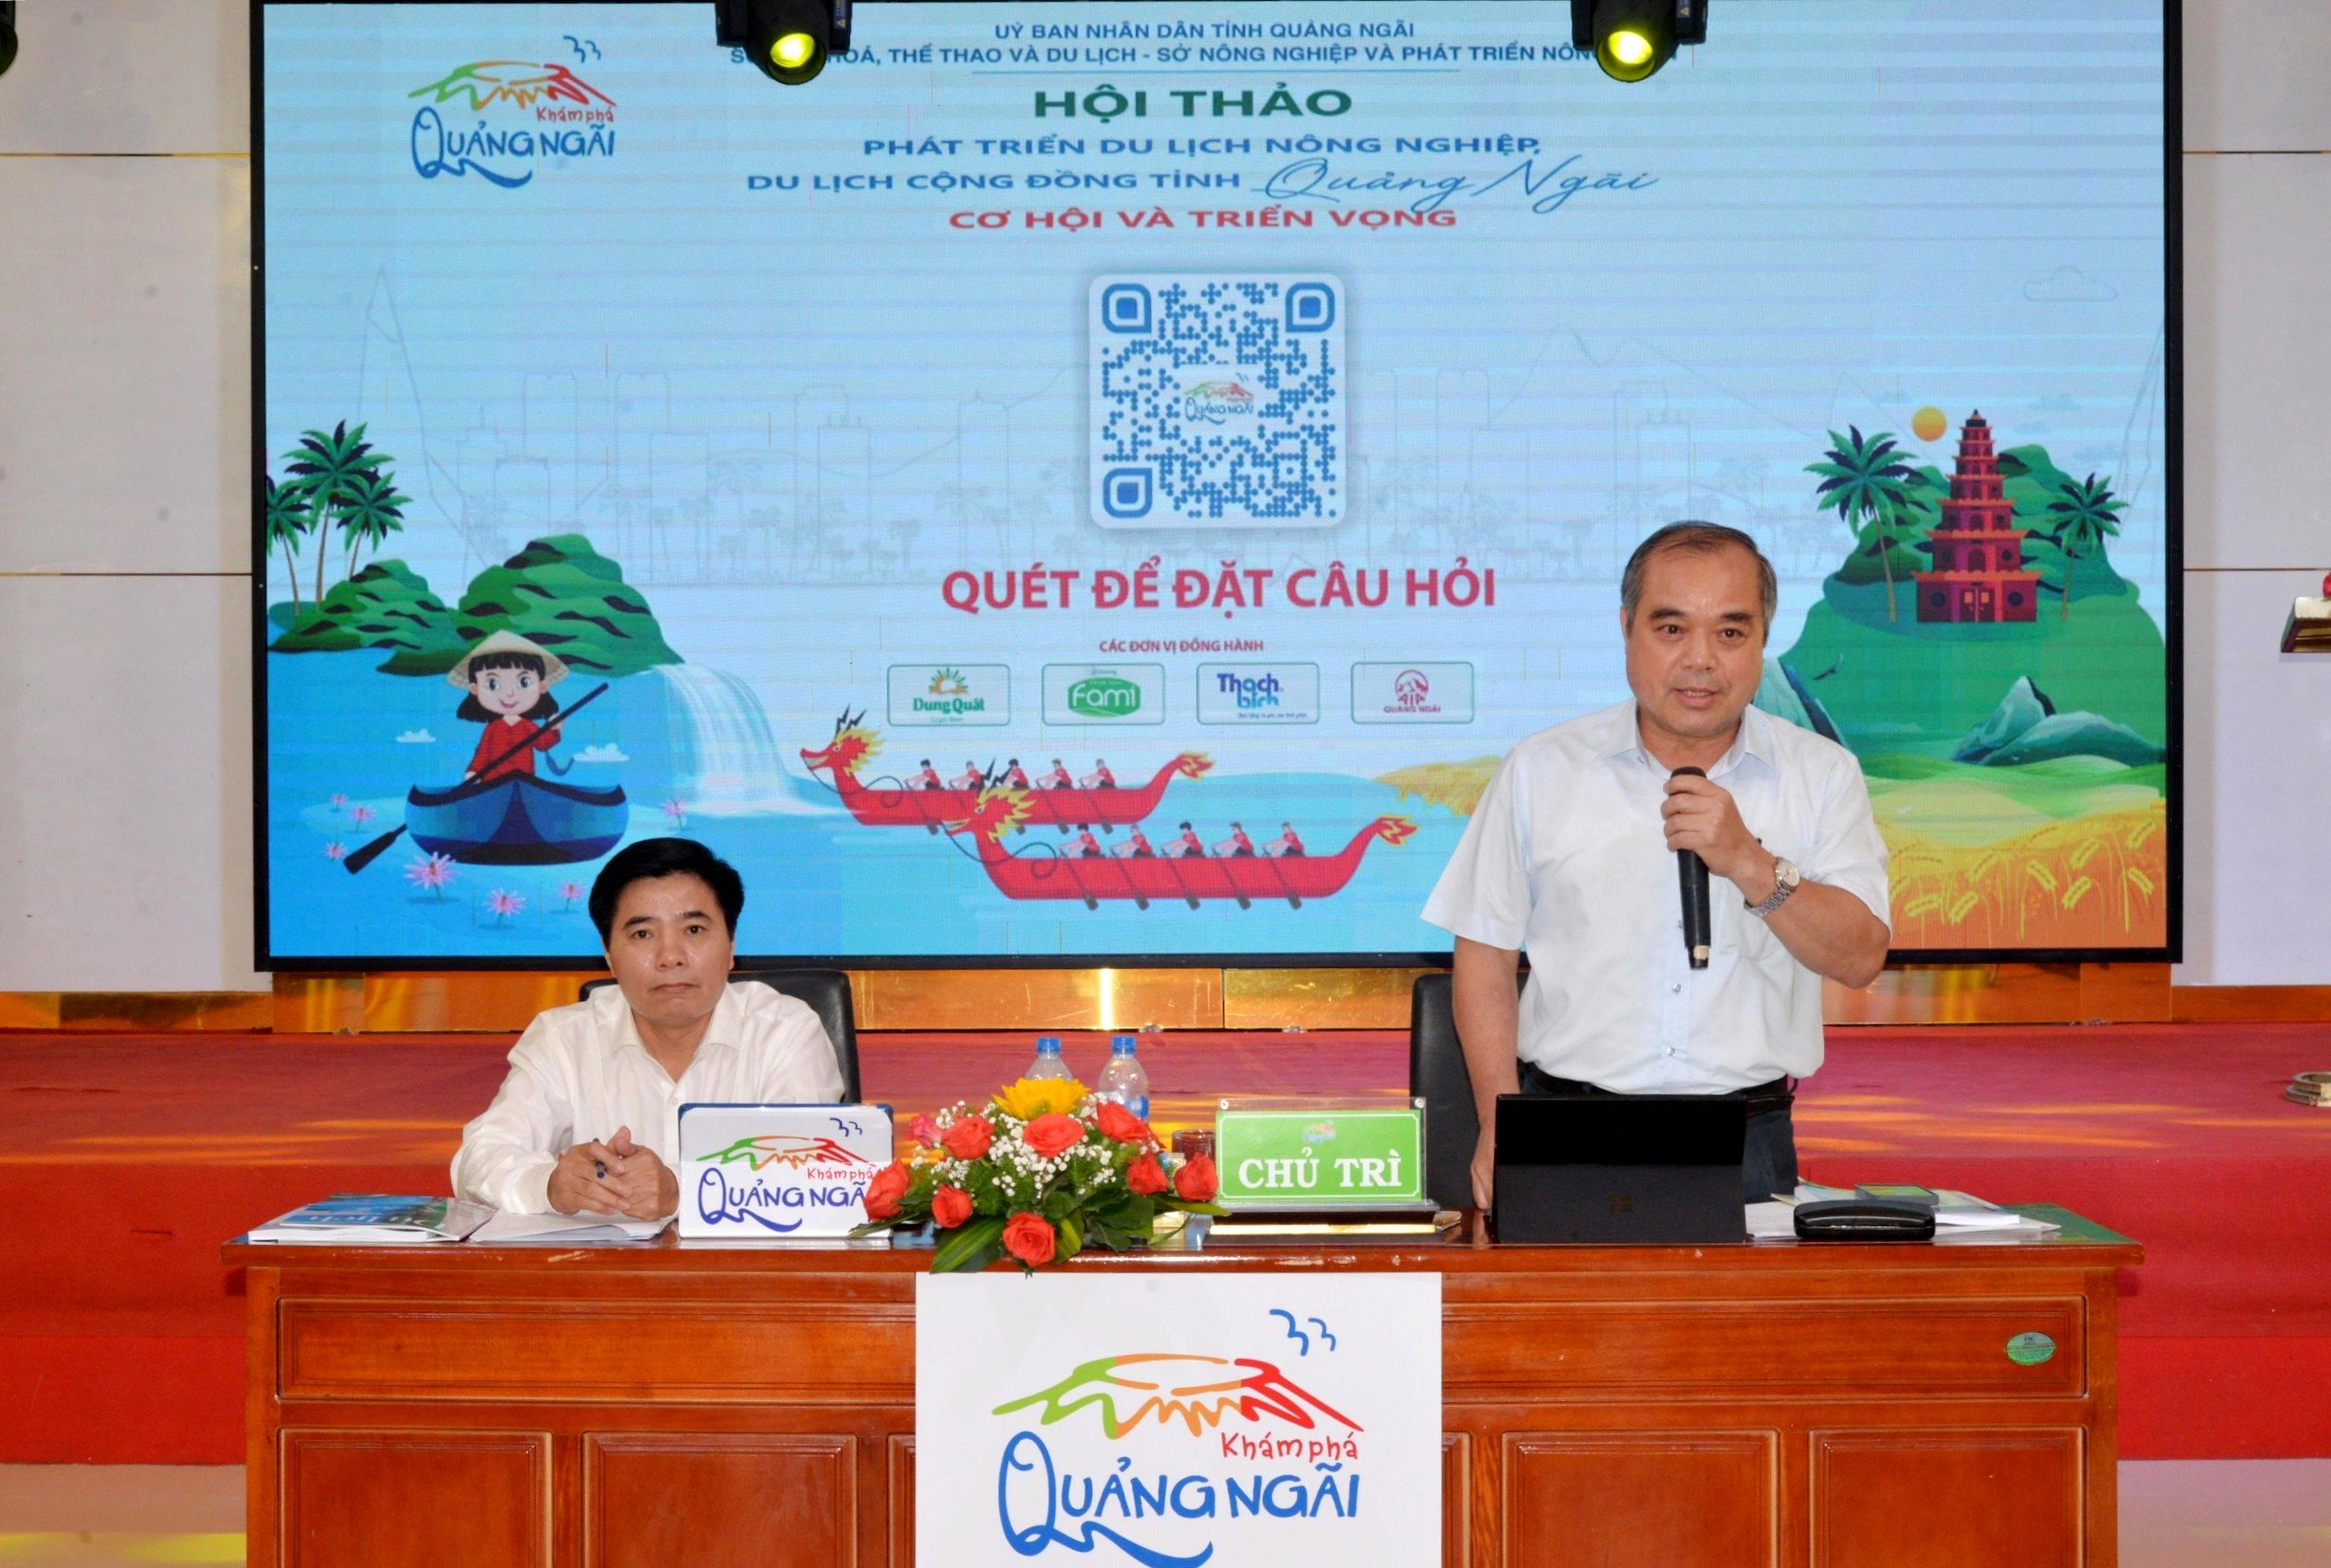 Phó Chủ tịch Thường trực UBND tỉnh Trần Hoàng Tuấn phát biểu tại Hội thảo du lịch nông nghiệp, du lịch cộng đồng tỉnh Quảng Ngãi- Cơ hội và phát triển